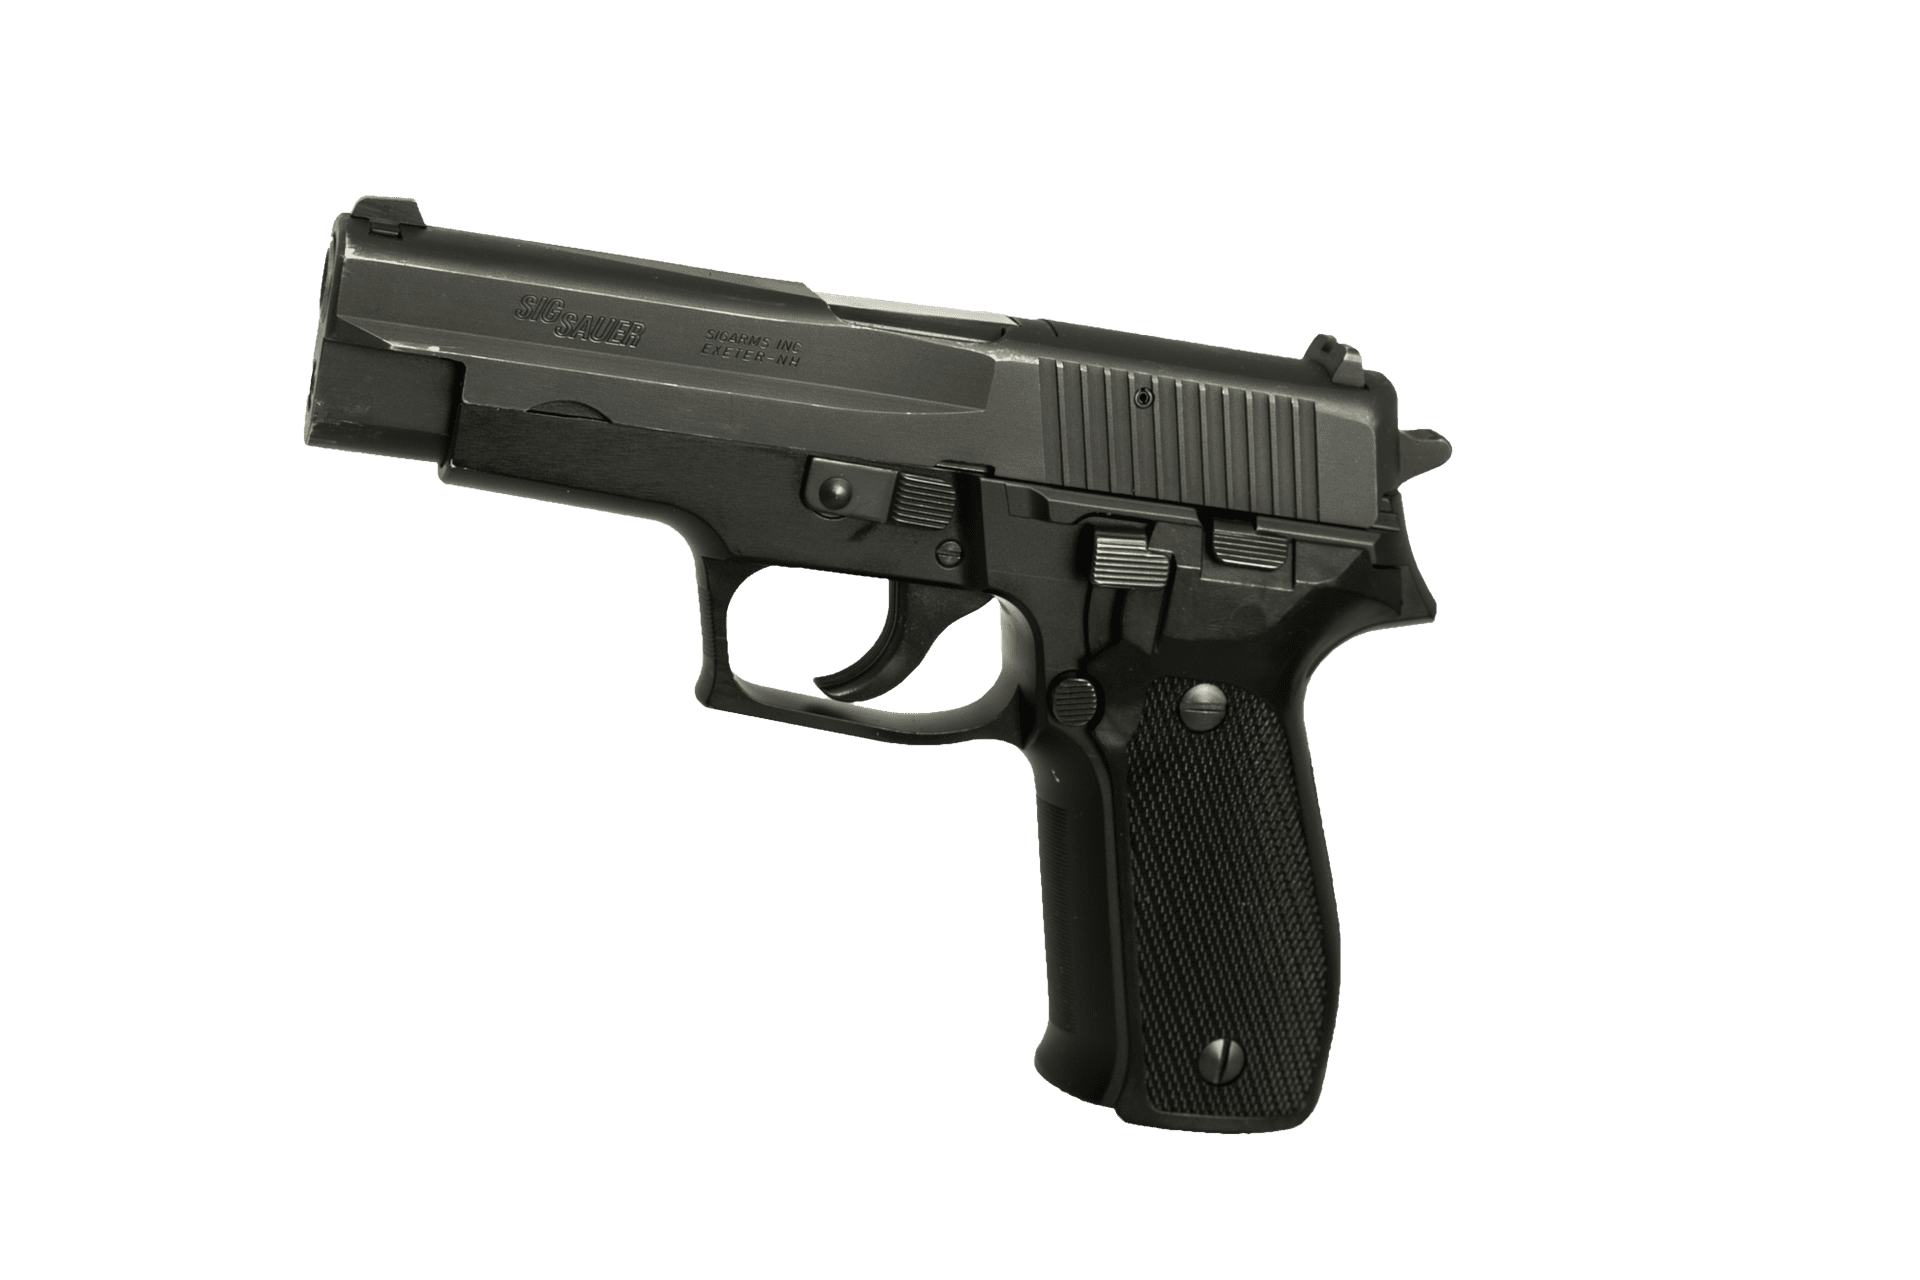 Sig Sauer handgun | Source: Pixabay